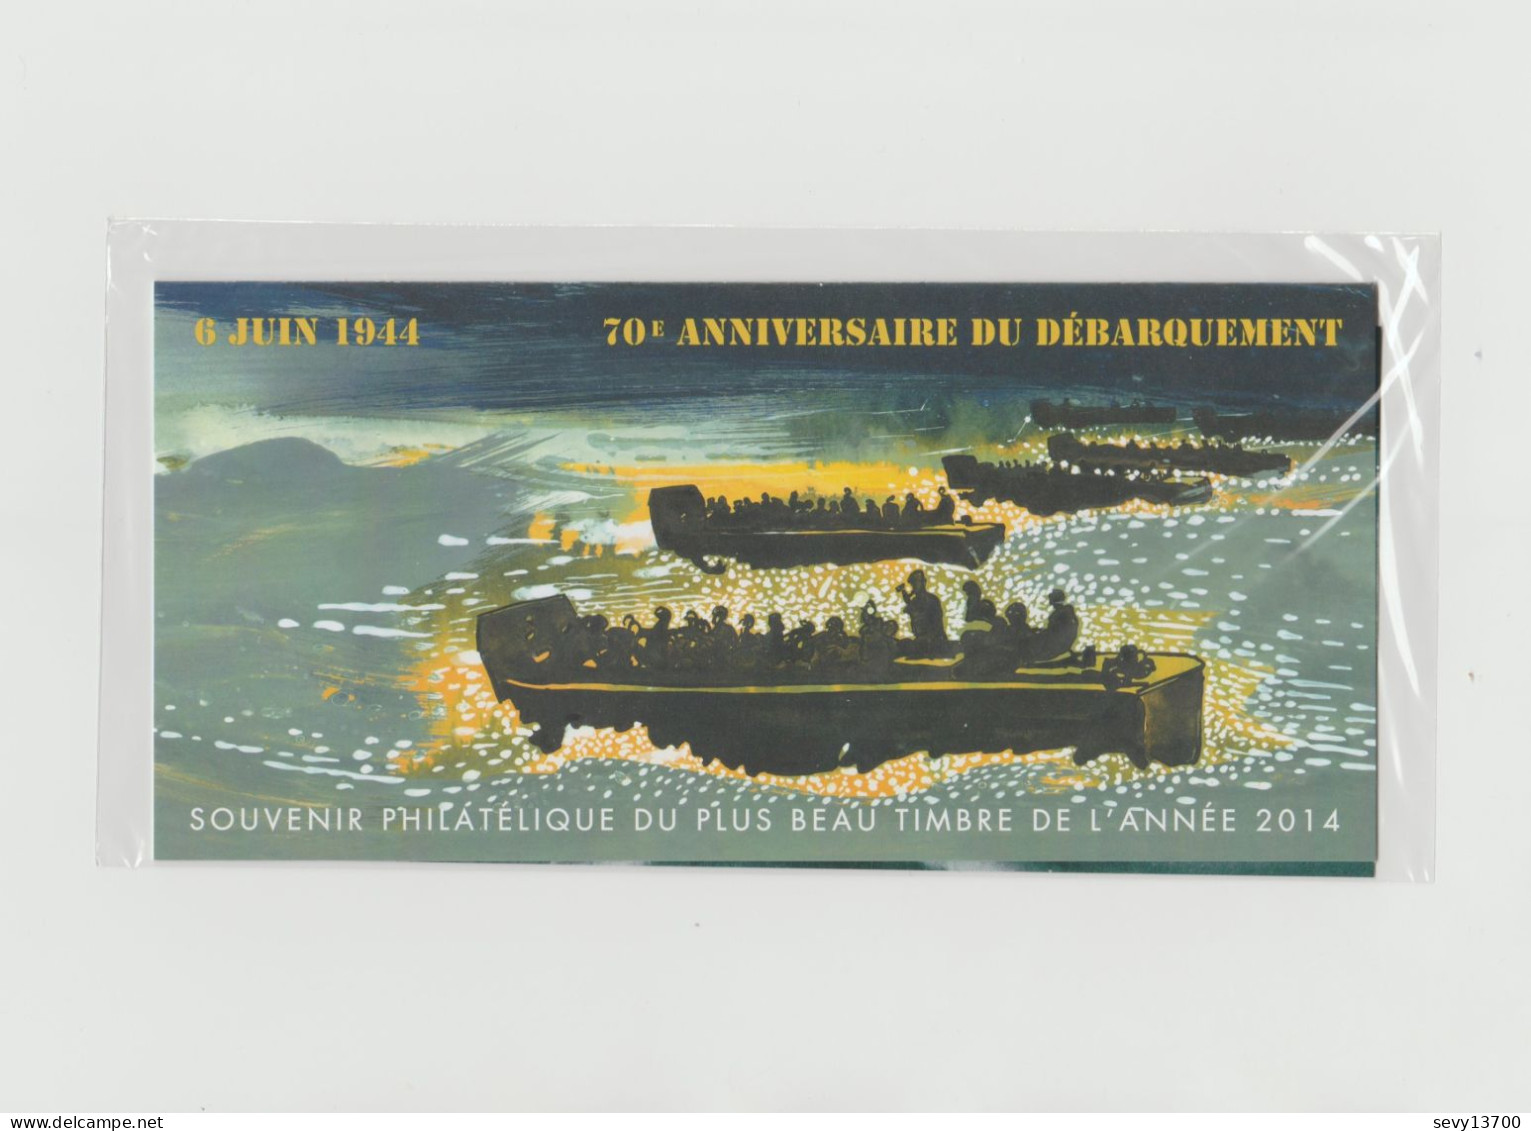 France 2015 - Bloc Souvenir Philatélique - 6 Juin 1944 70ème Anniversaire Du Débarquement N° 114 - Neuf Sous Blister - Blocs Souvenir